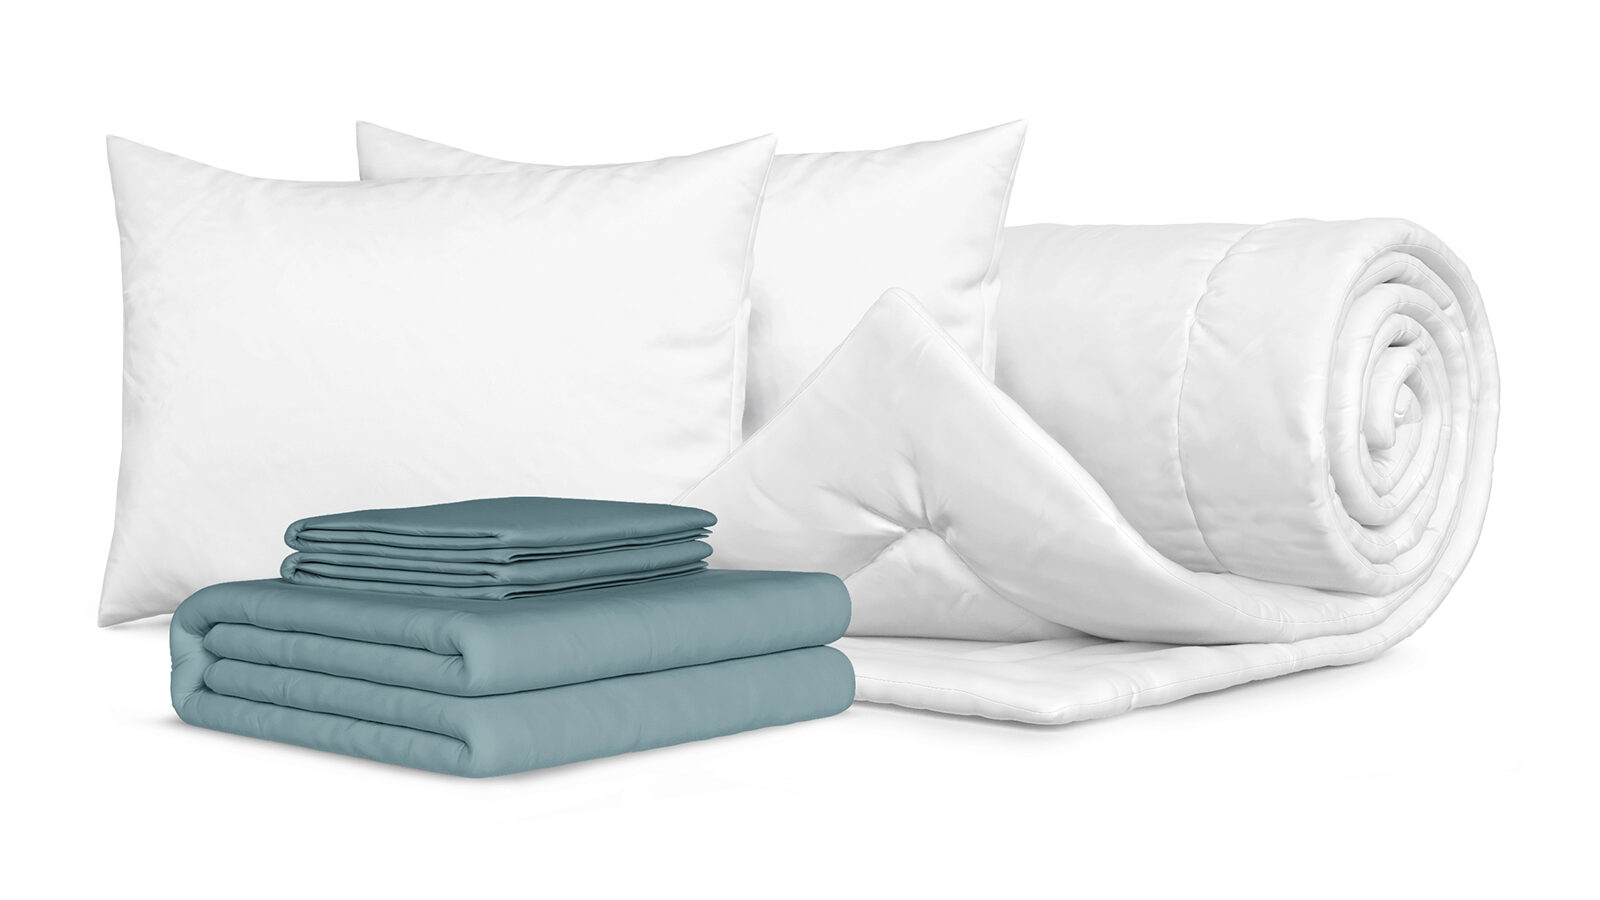 Комплект Одеяло Beat + 2 Подушка Sky + Комплект постельного белья Comfort Cotton, цвет: Серо-голубой летний комплект для мальчика лён рост 80 голубой